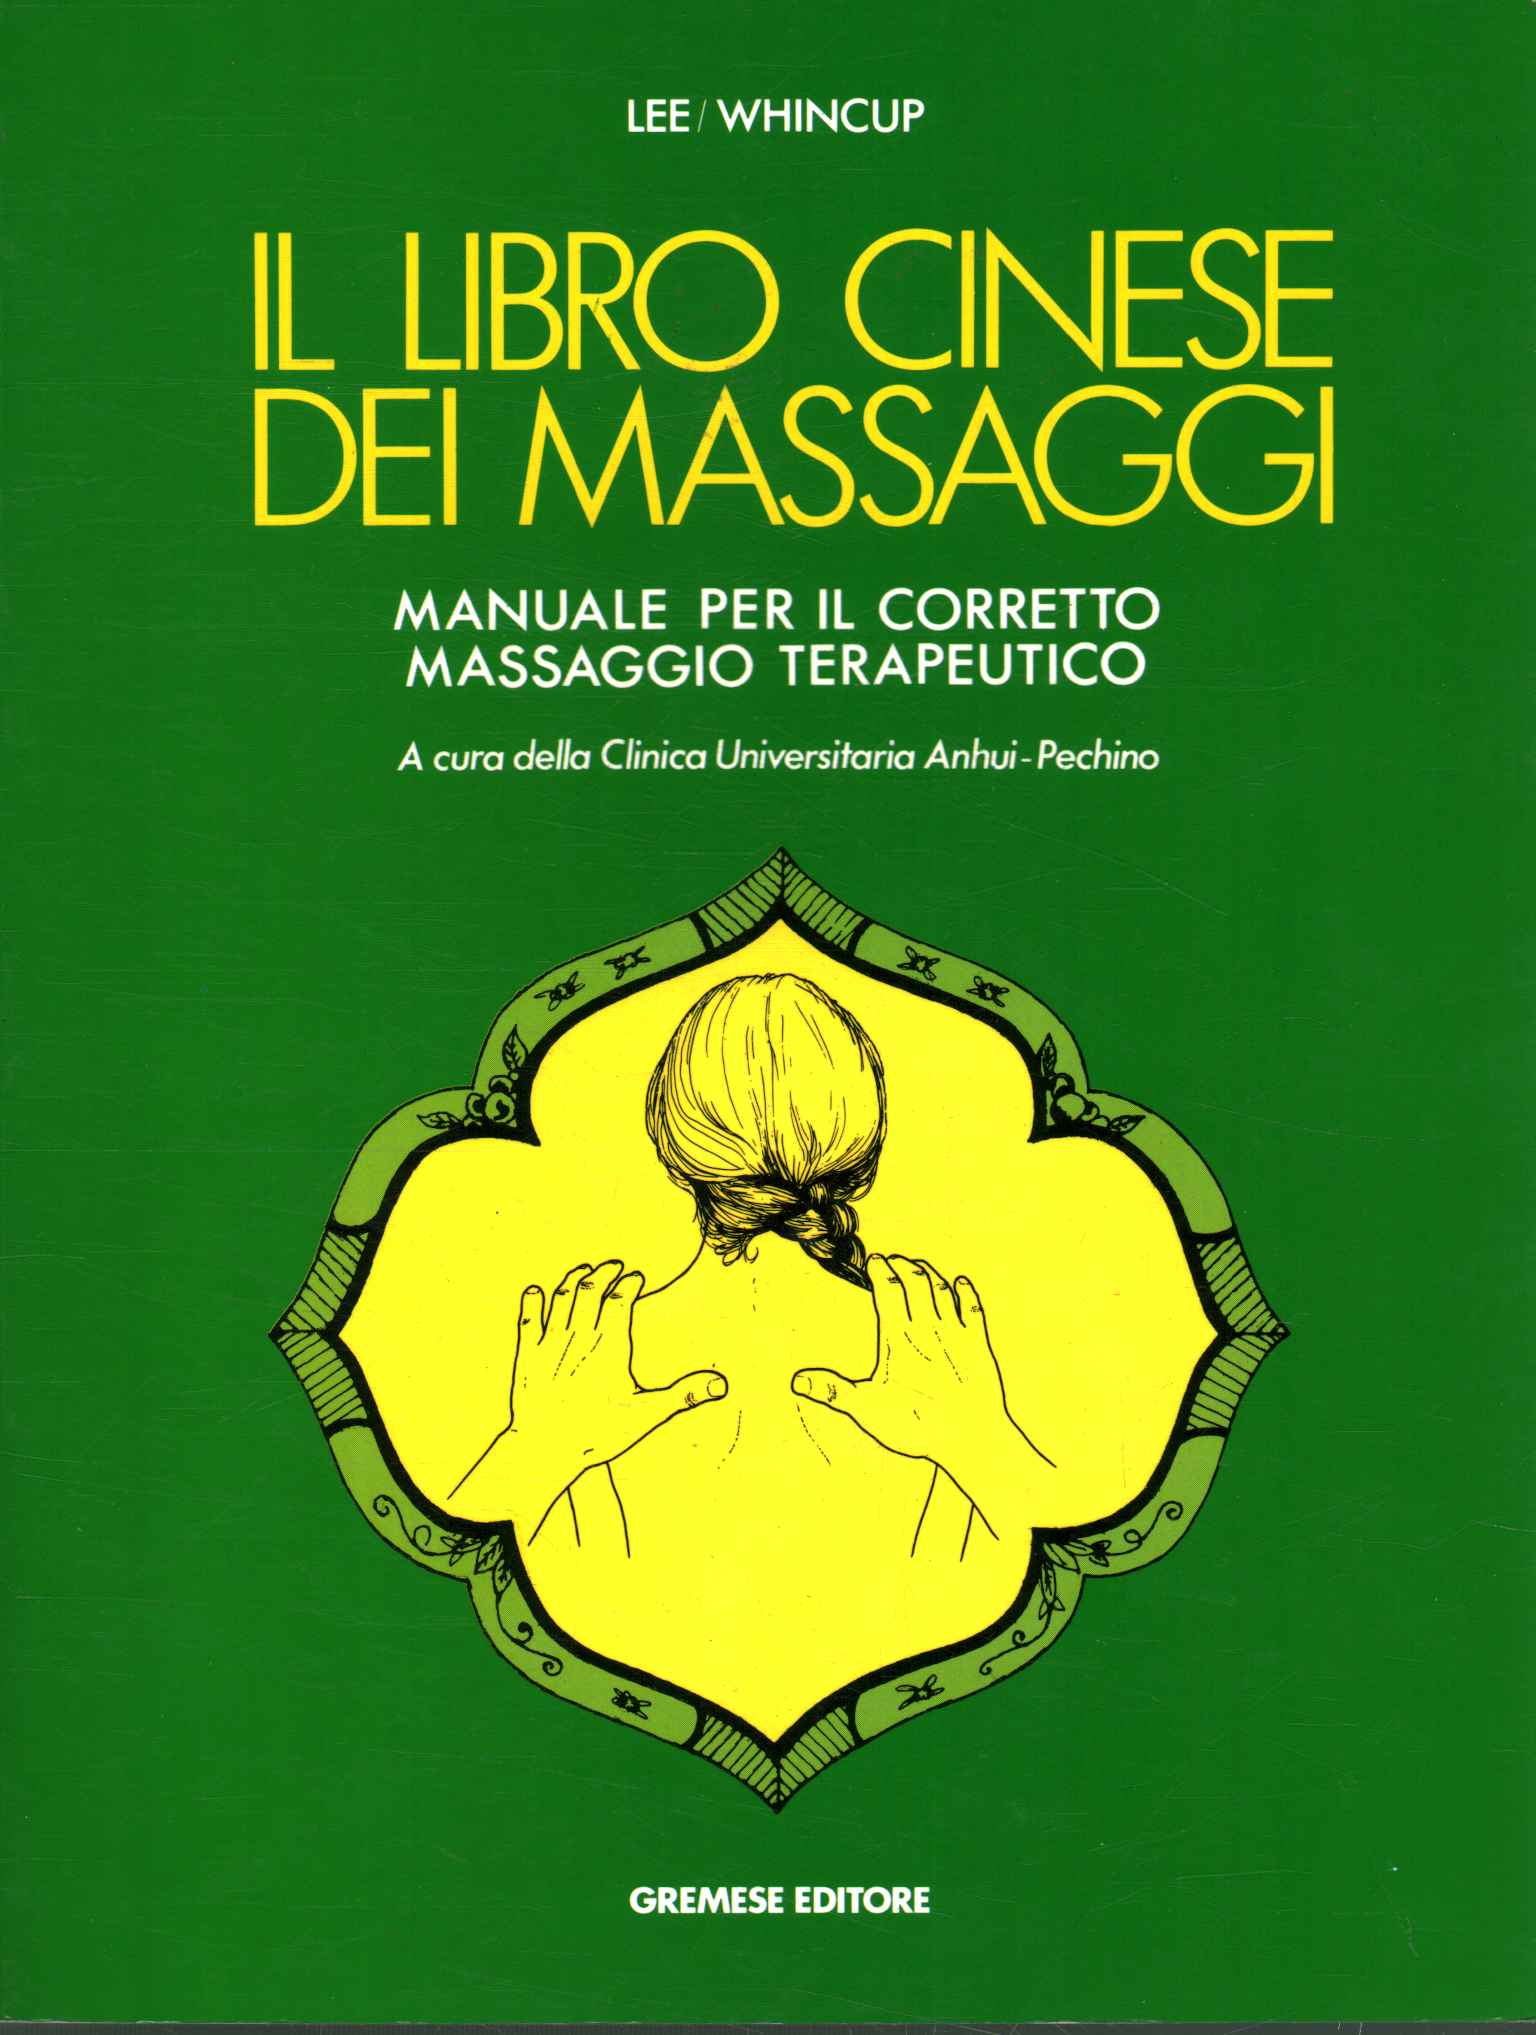 El libro del masaje chino